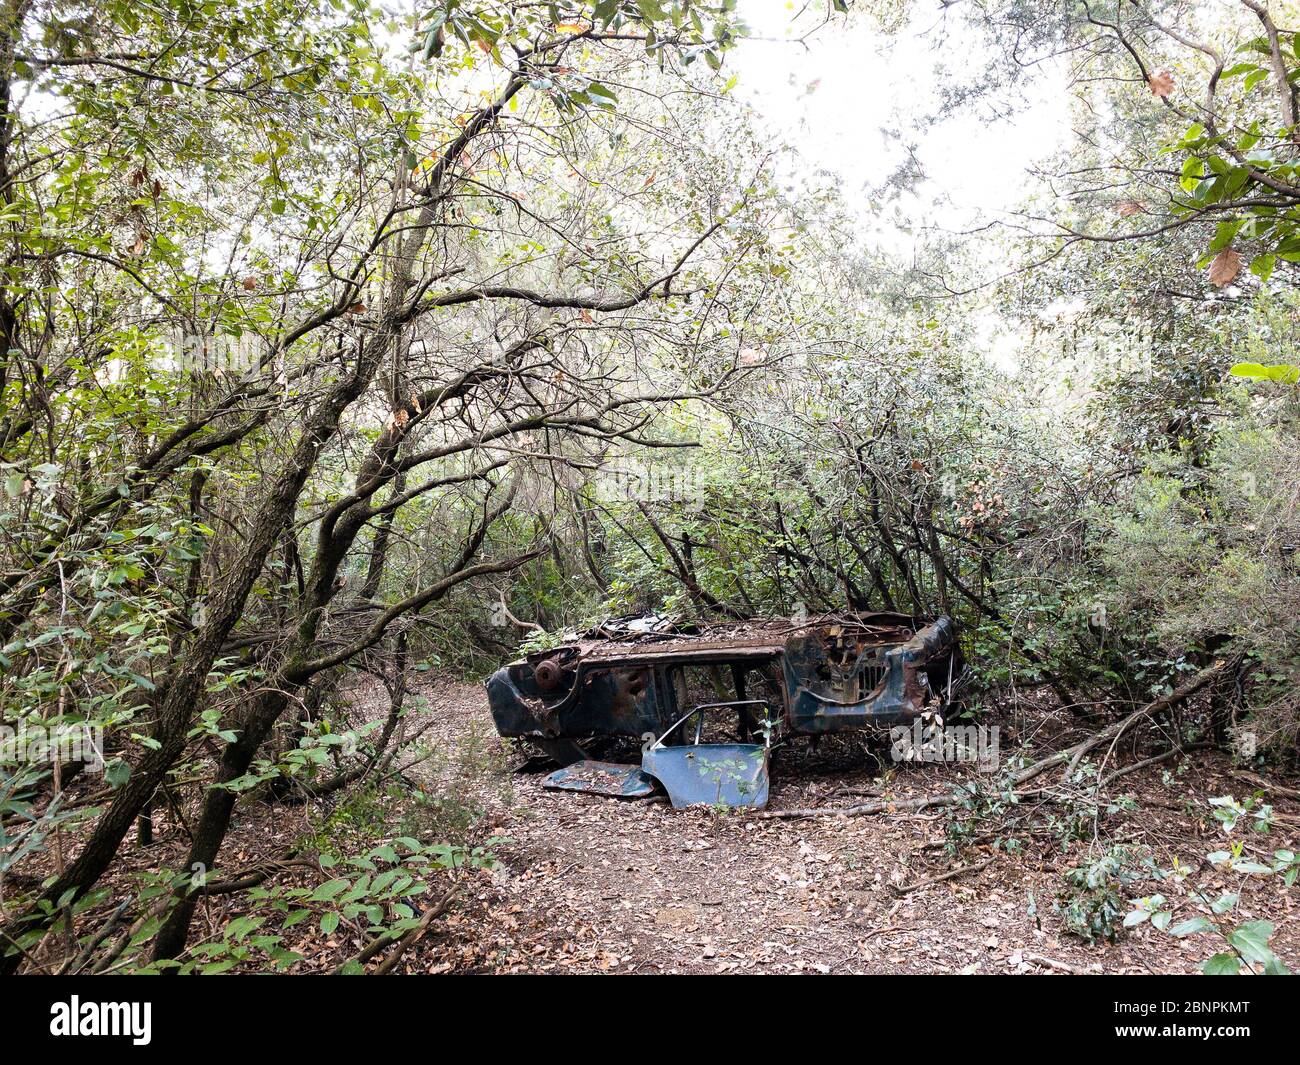 Antiguo coche de los años sesenta del siglo pasado abandonado y destruido en un bosque de España Foto de stock